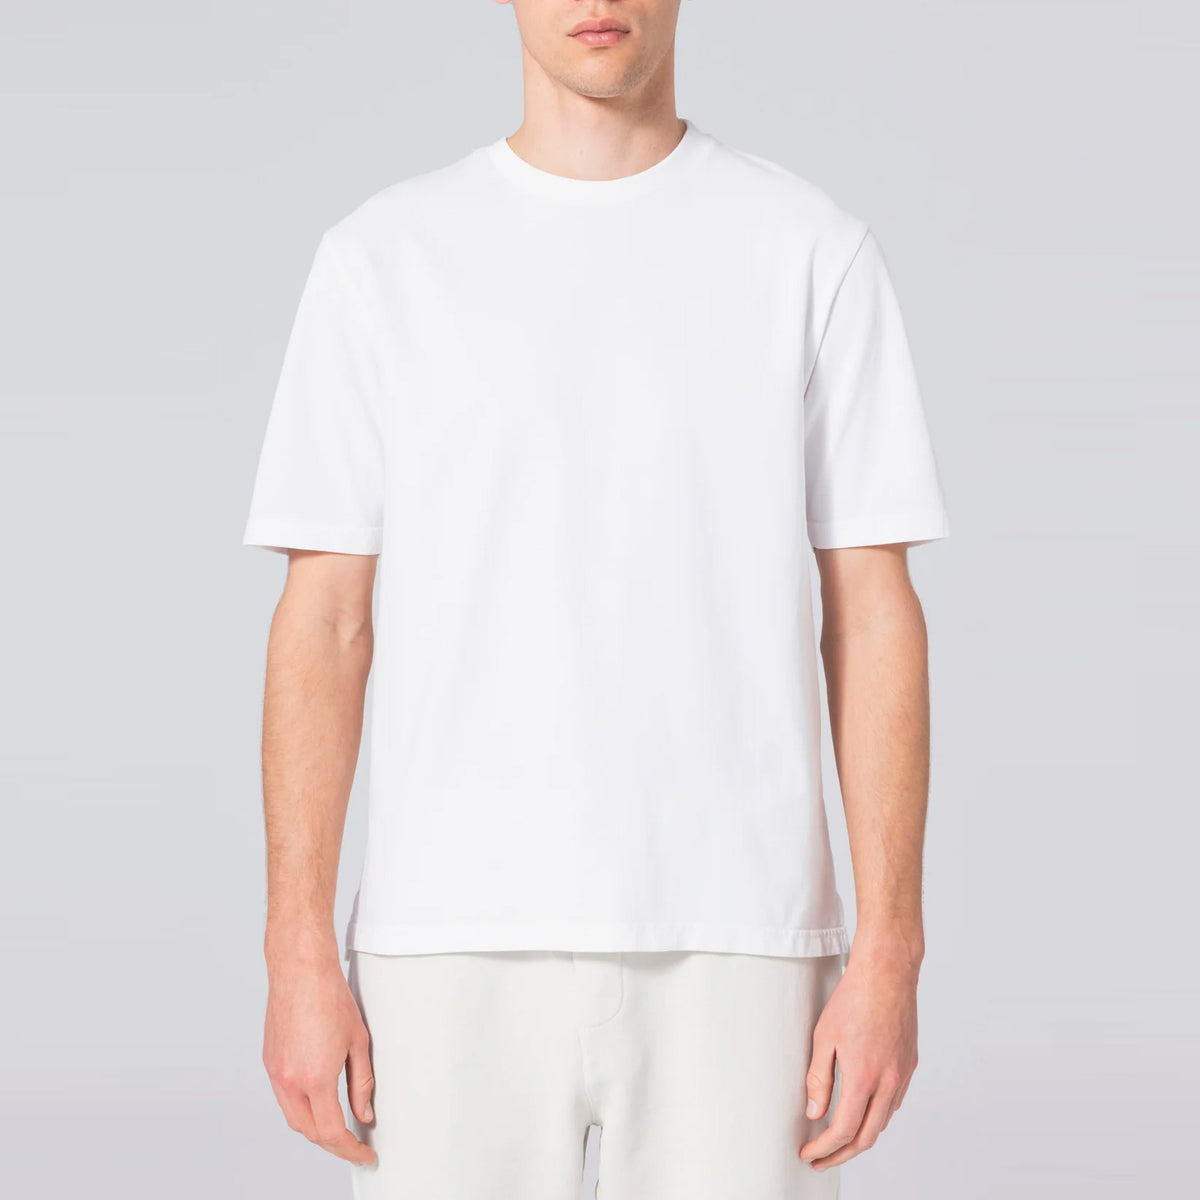 Basic T-Shirt White. Unfeigned